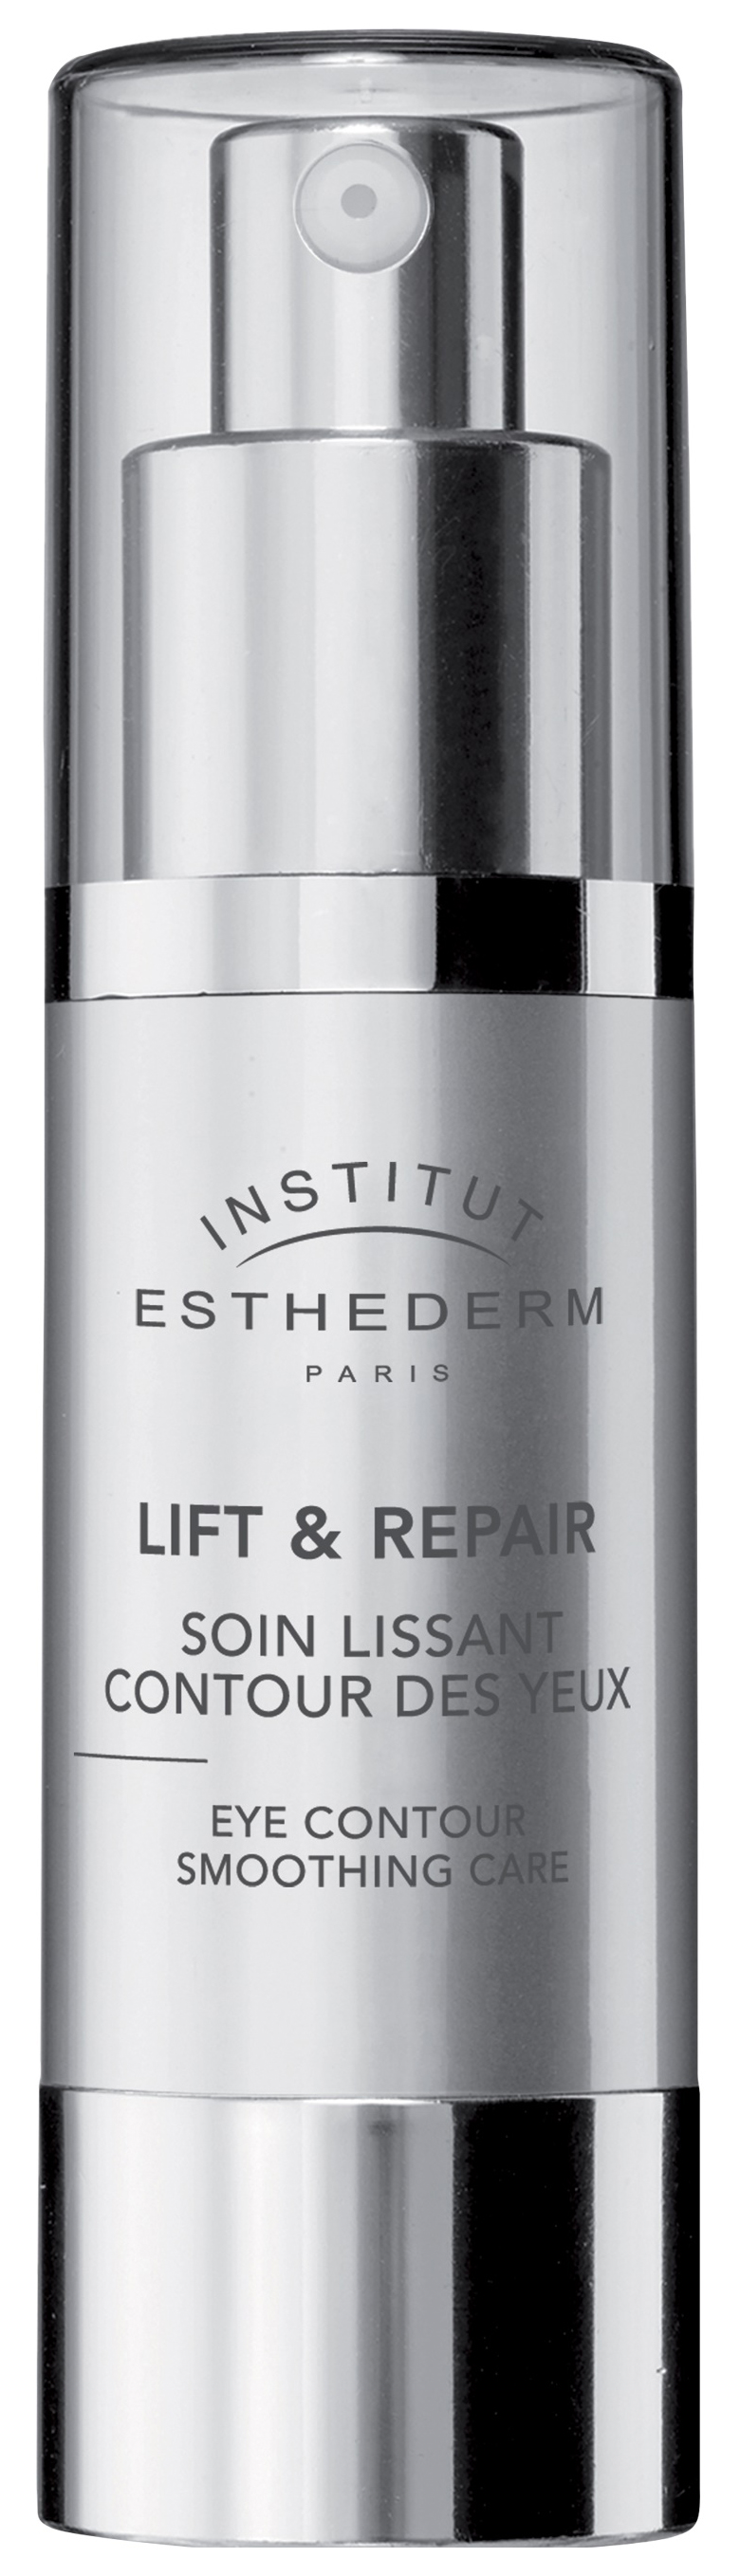 Крем для глаз Institut Esthederm Lift Repair Eye Contour Smoothing Cream 15 мл institut esthederm lift